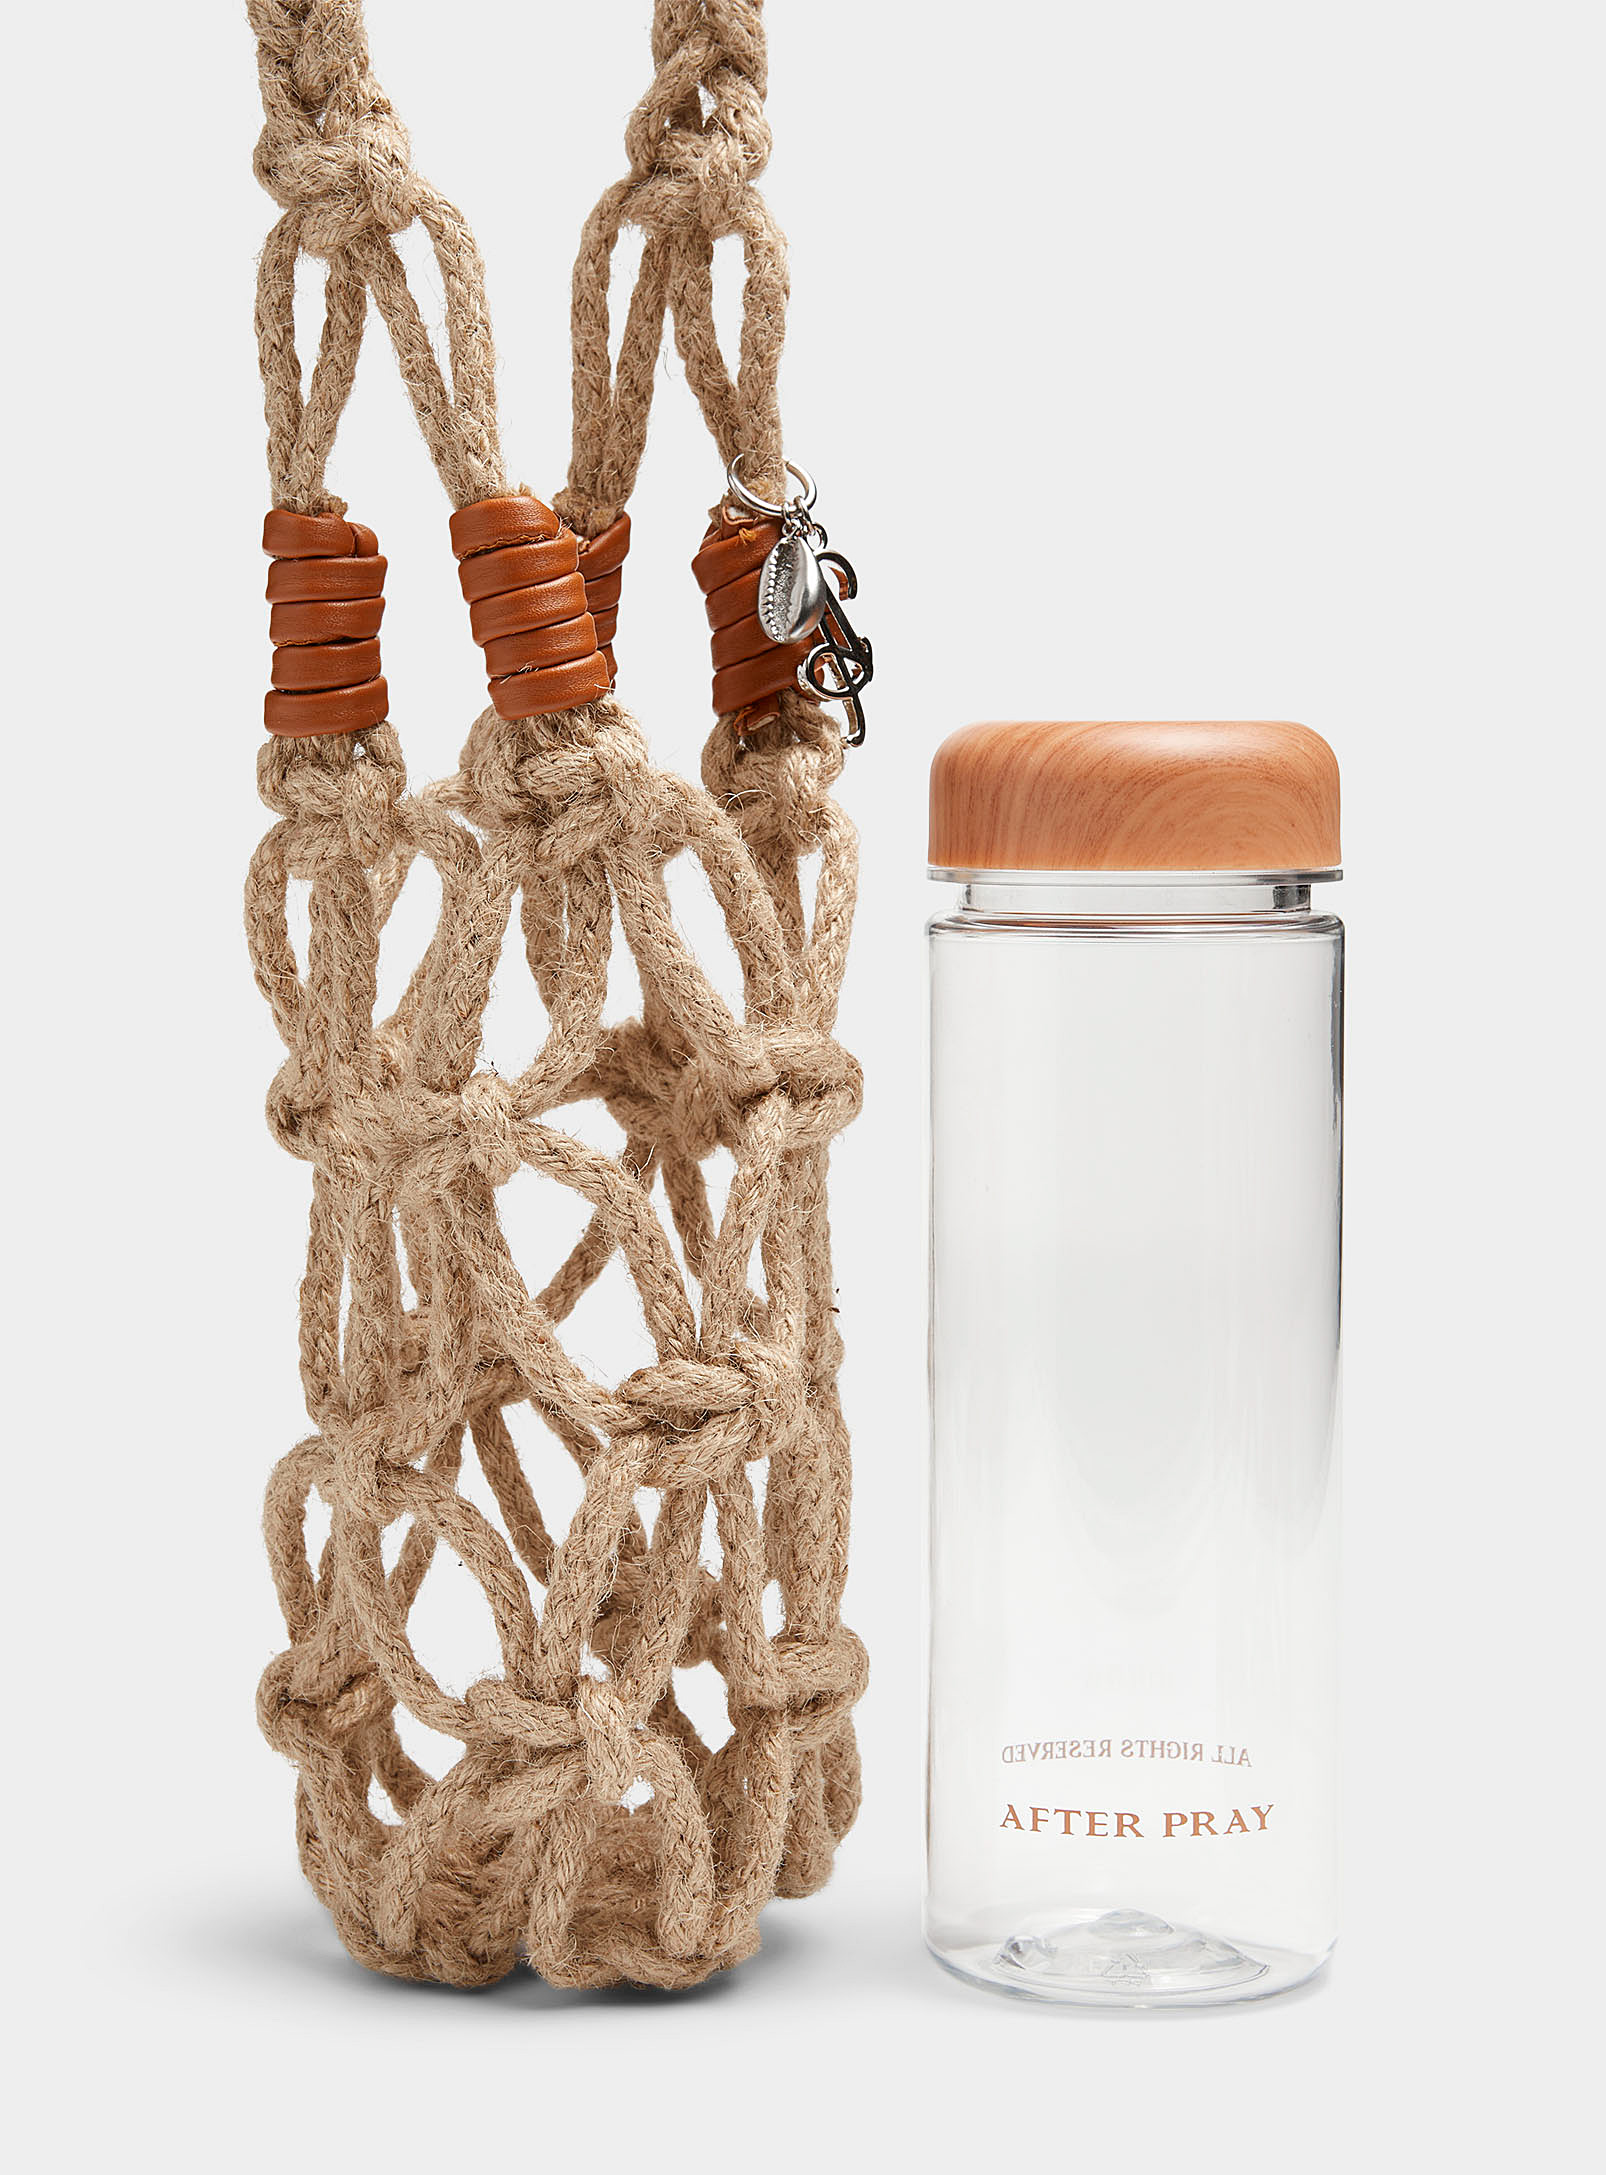 AFTER PRAY - Le sac corde tressée et bouteille